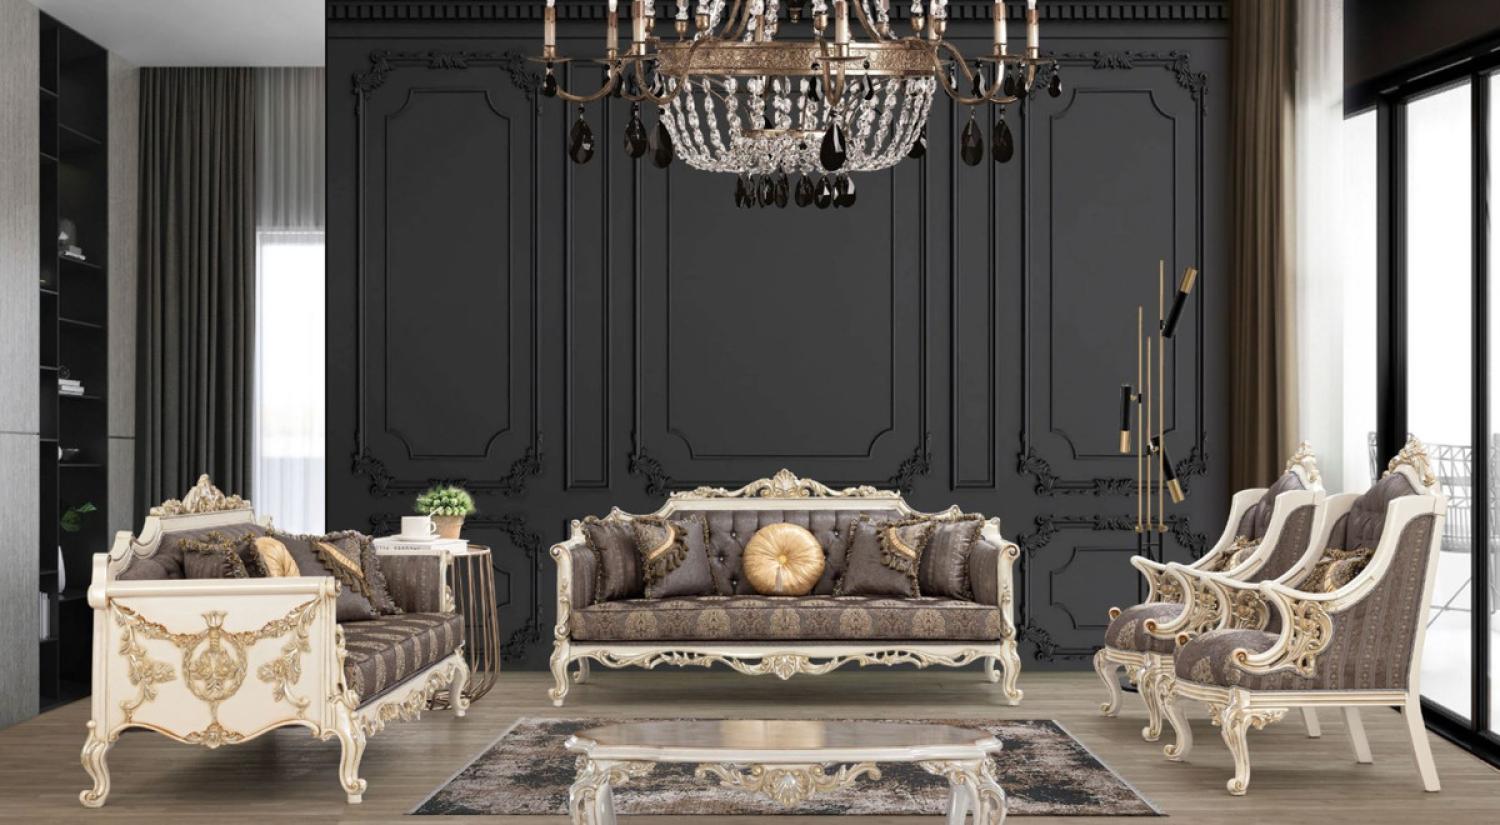 Casa Padrino Luxus Barock Wohnzimmer Set Grau / Braun / Weiß / Gold / Silber - 2 Sofas & 2 Sessel & 1 Couchtisch - Handgefertigte Barock Wohnzimmer Möbel - Edel & Prunkvoll Bild 1